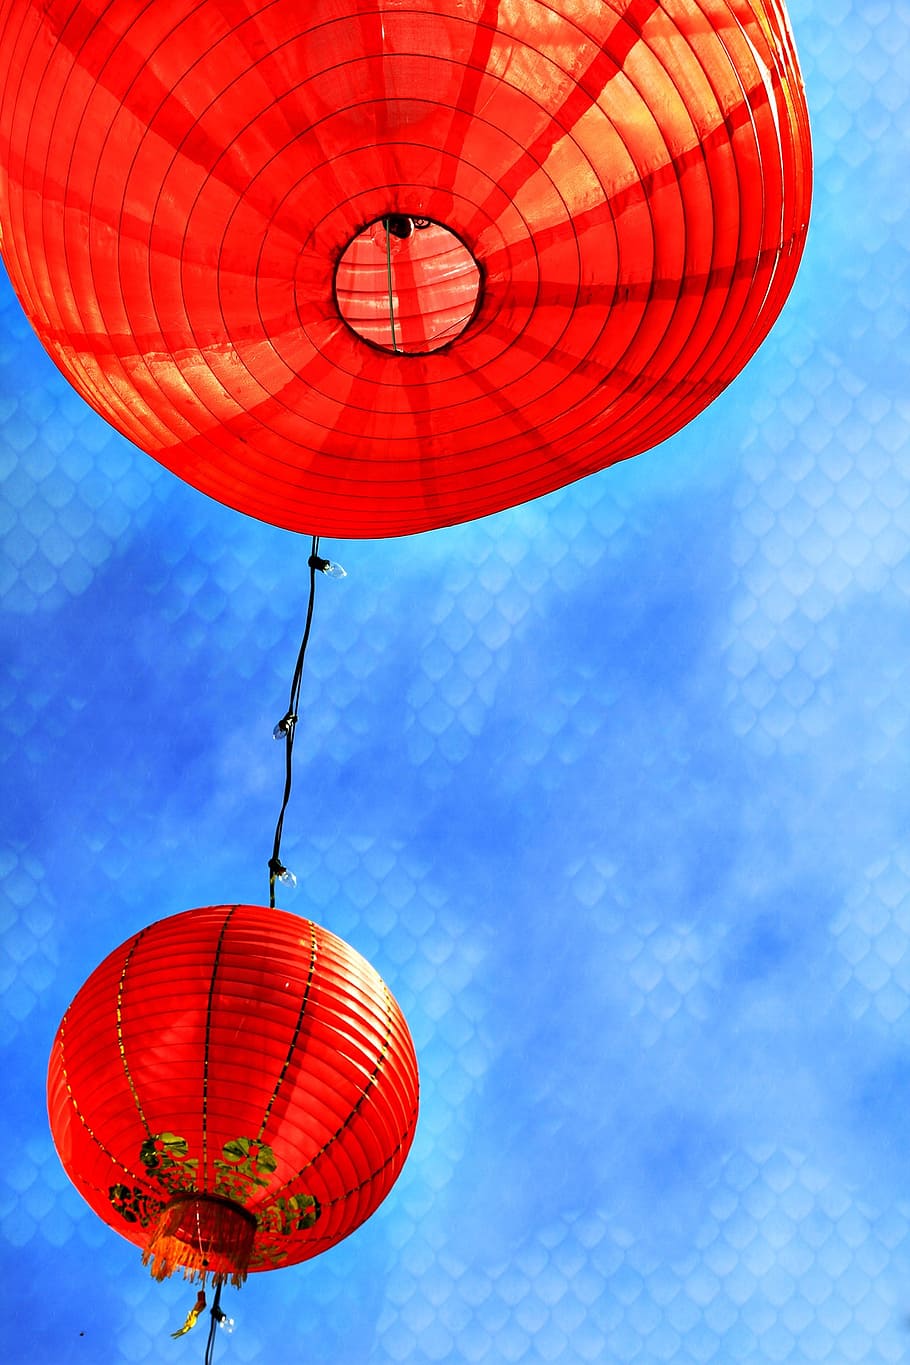 fotografía de primer plano, ronda, rojo, linternas, año nuevo chino, linternas chinas, san francisco, california, chino, año